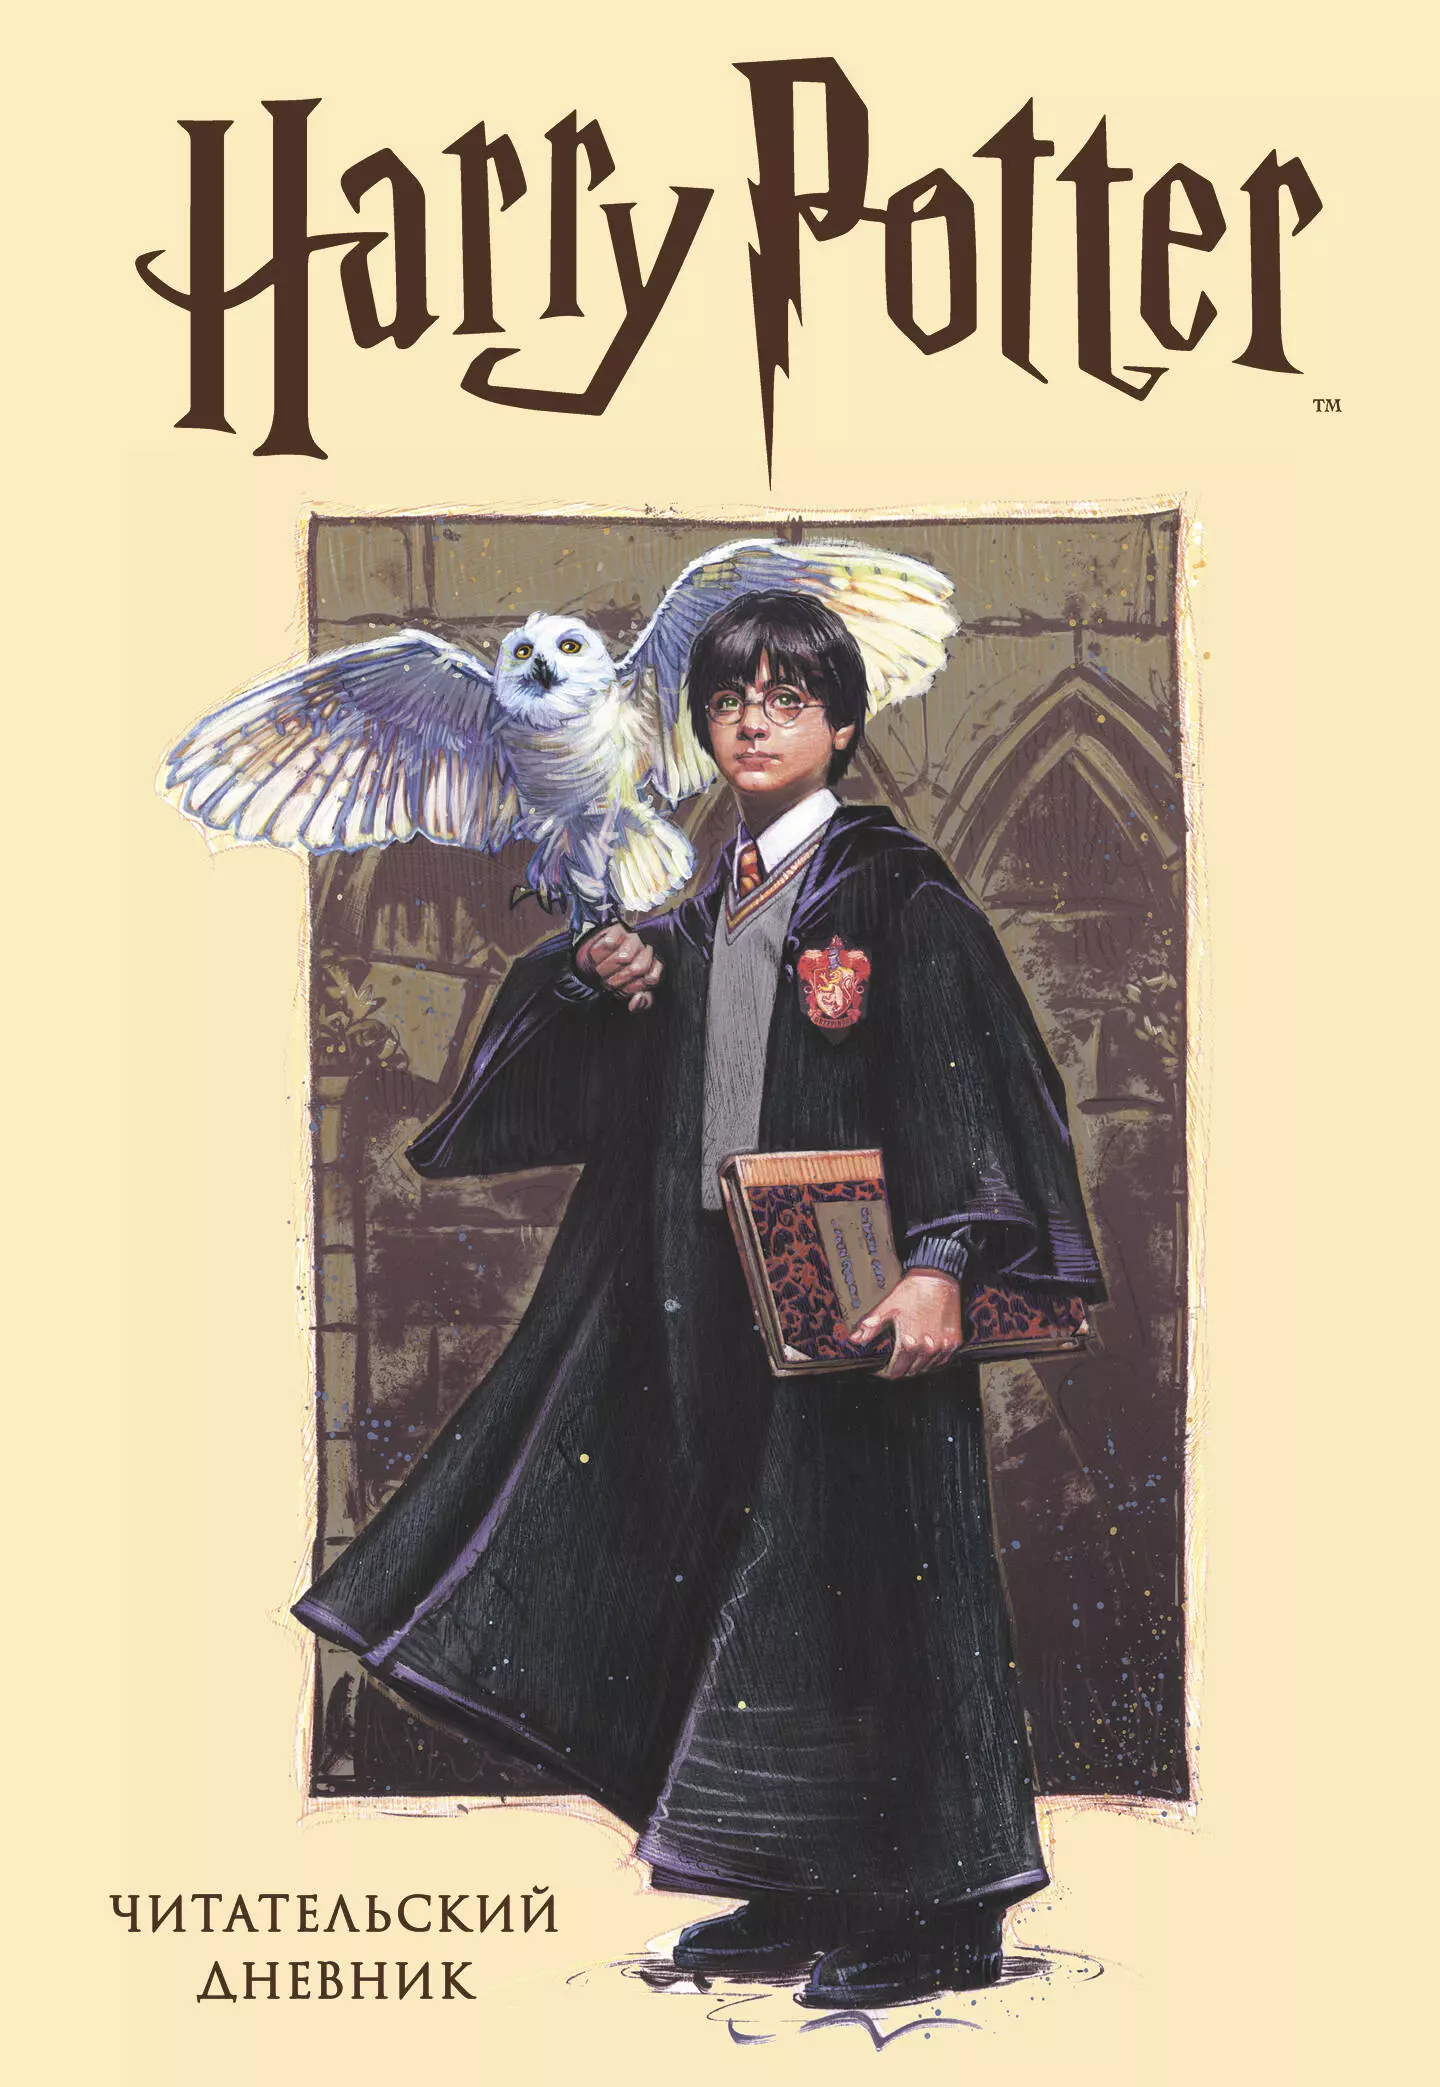 Читательский дневник. Гарри Поттер (32 л., твердый переплет, с наклейками) читательский дневник гарри поттер 32 листа с наклейками